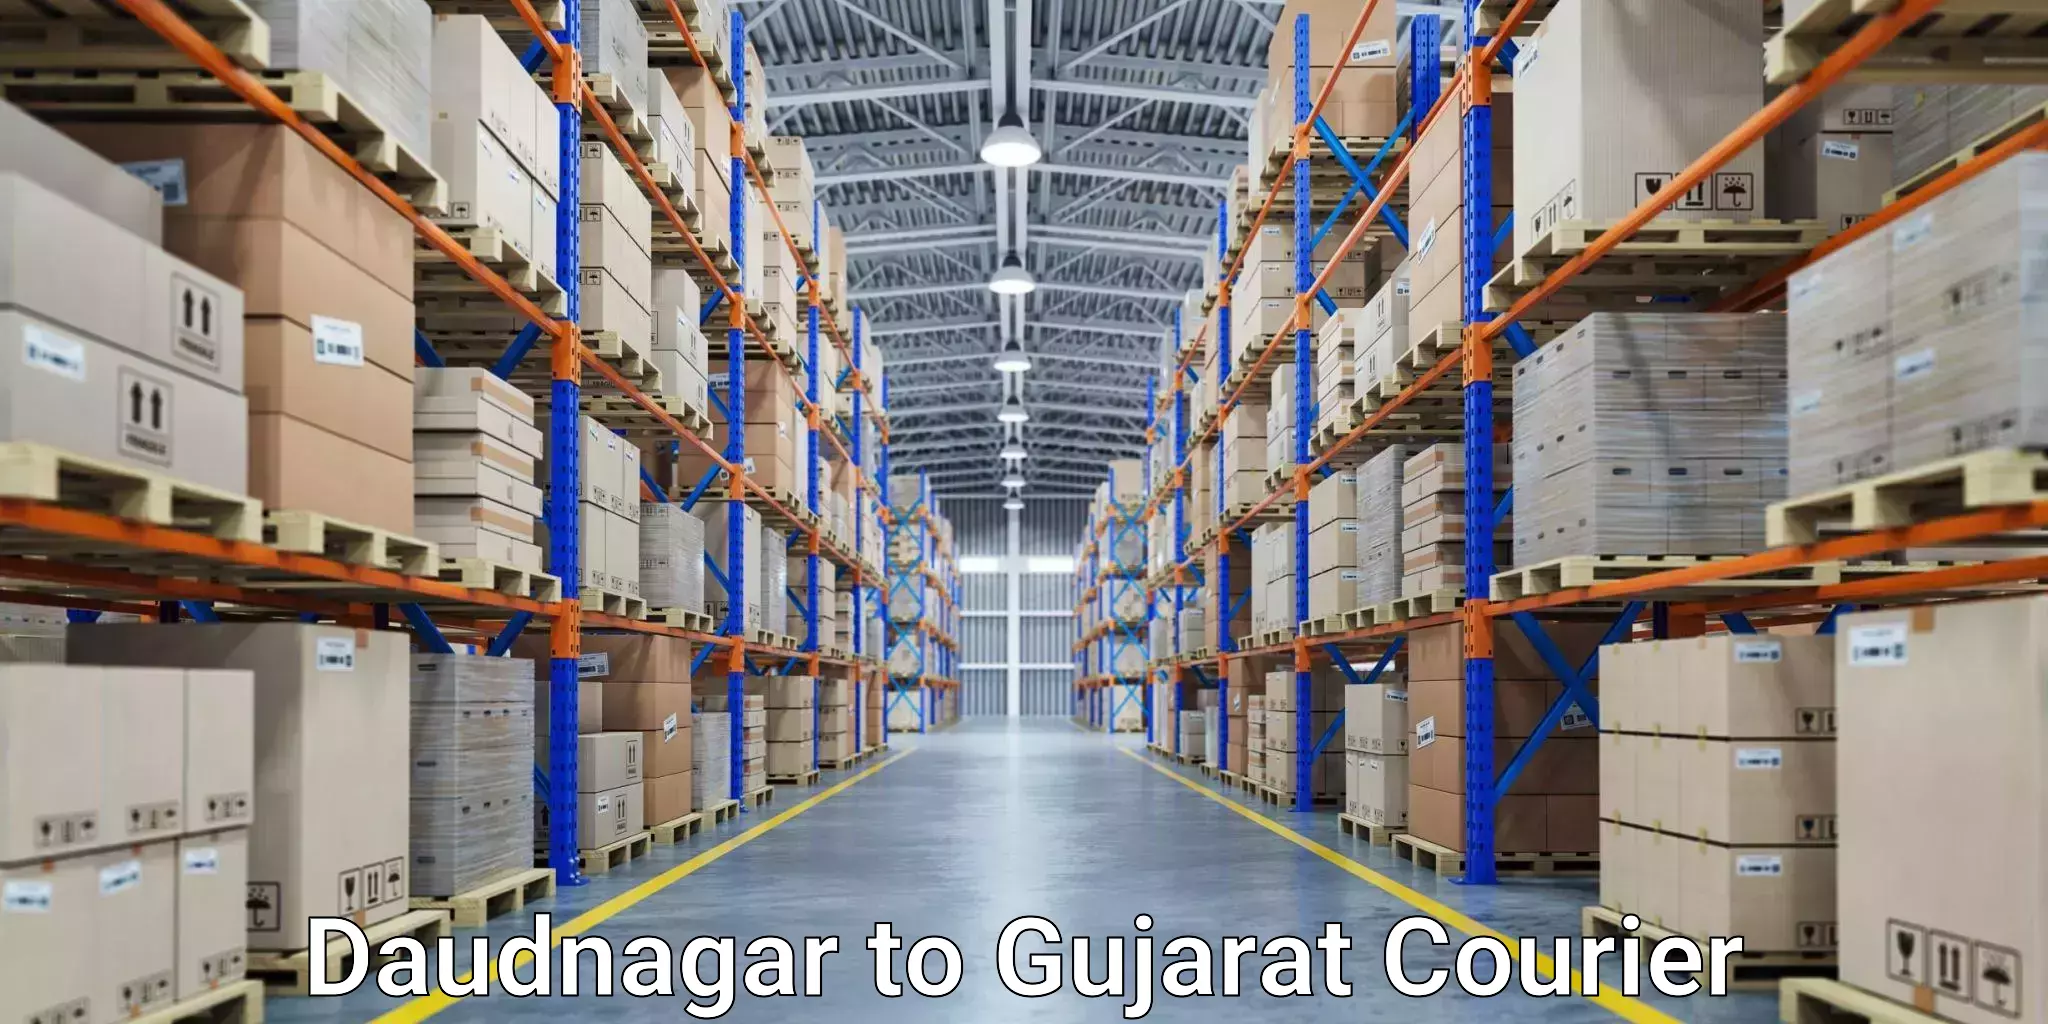 Ground shipping Daudnagar to Ahmedabad